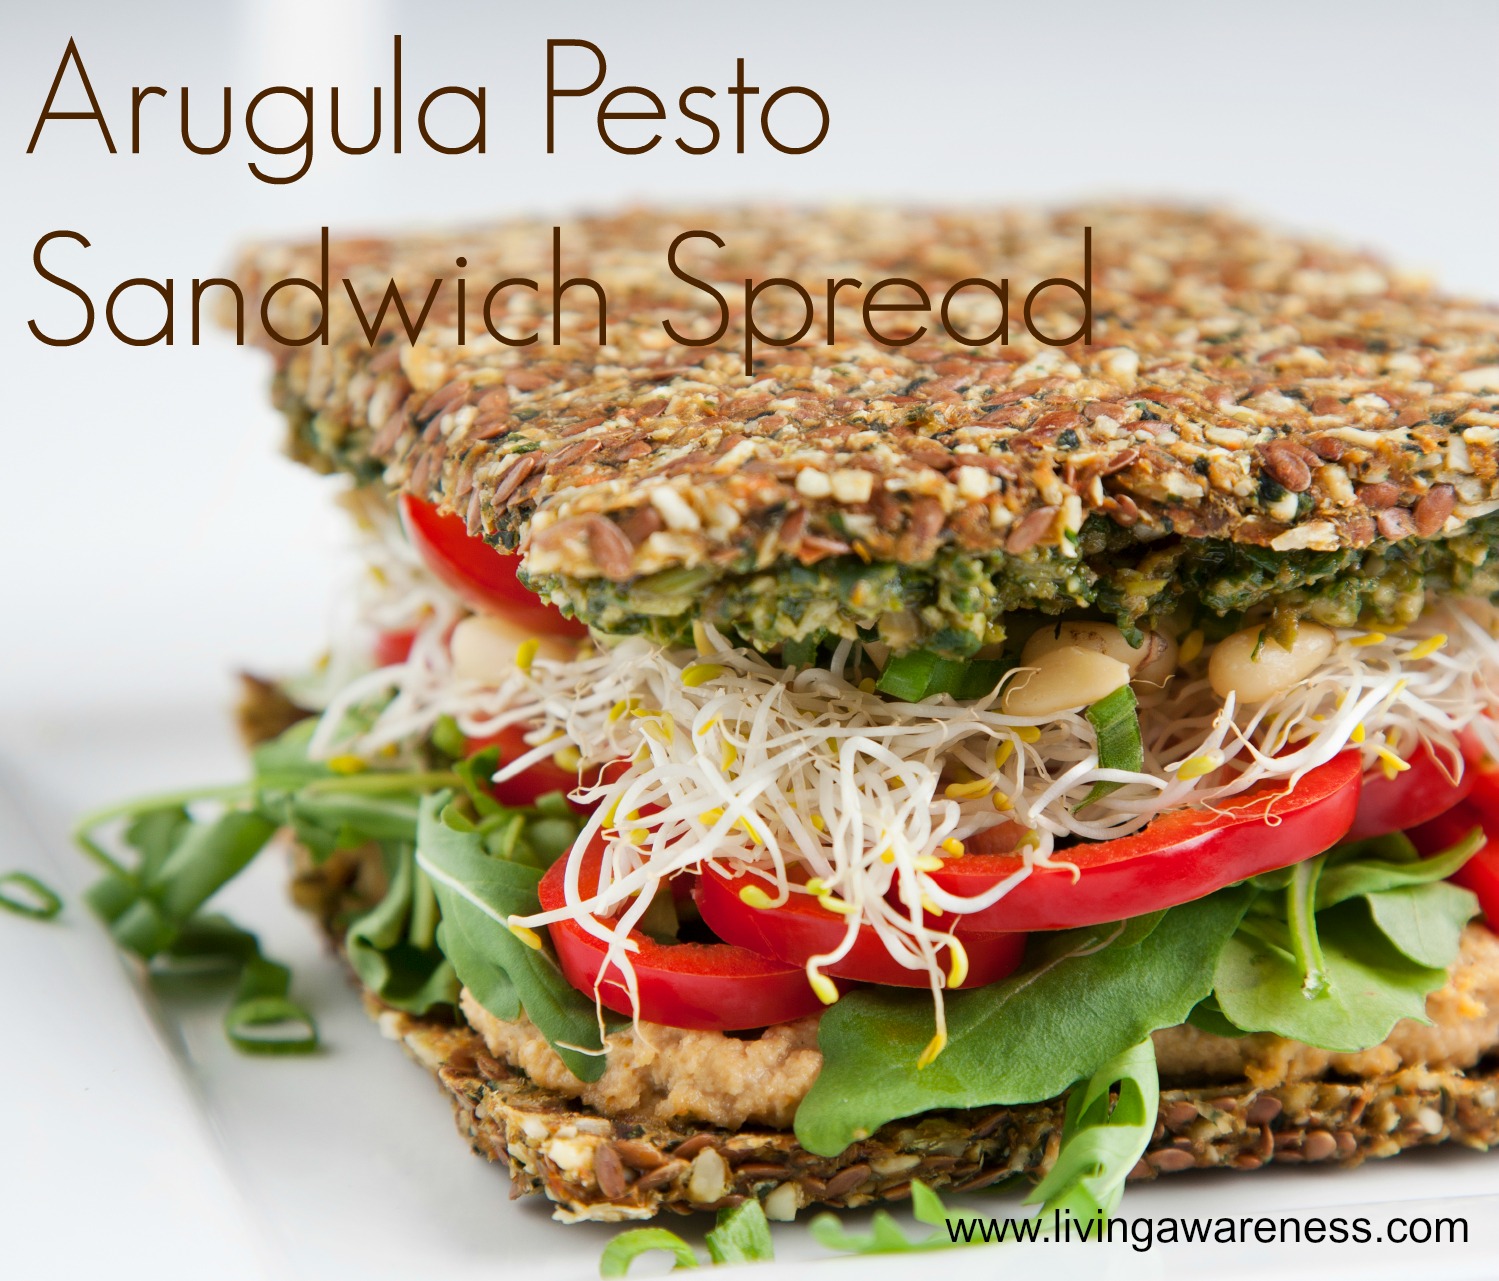 Arugula-pesto-sandwich-spread-recipe